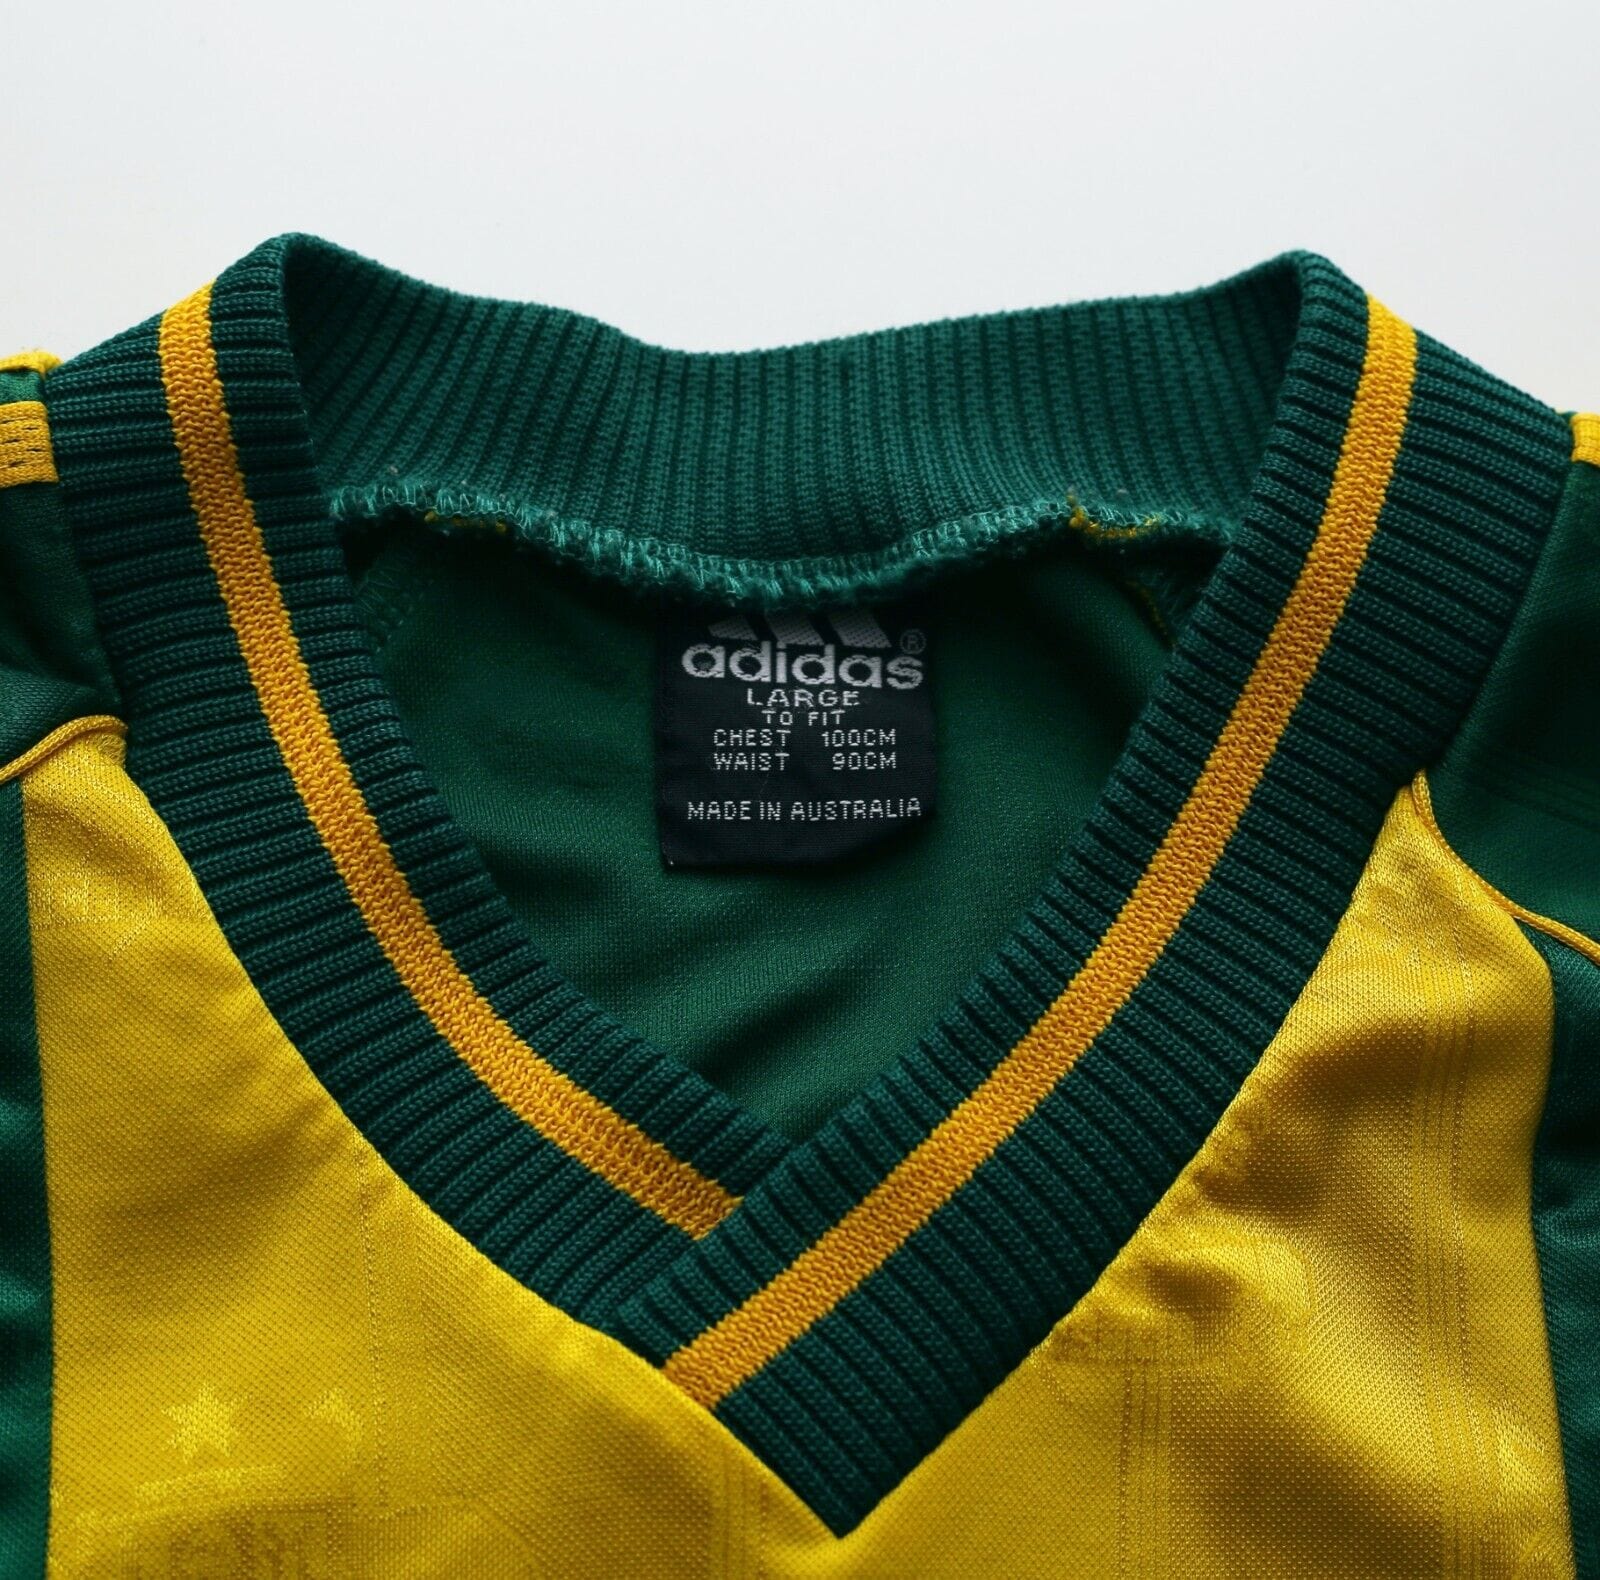 Australia national team vintage kits